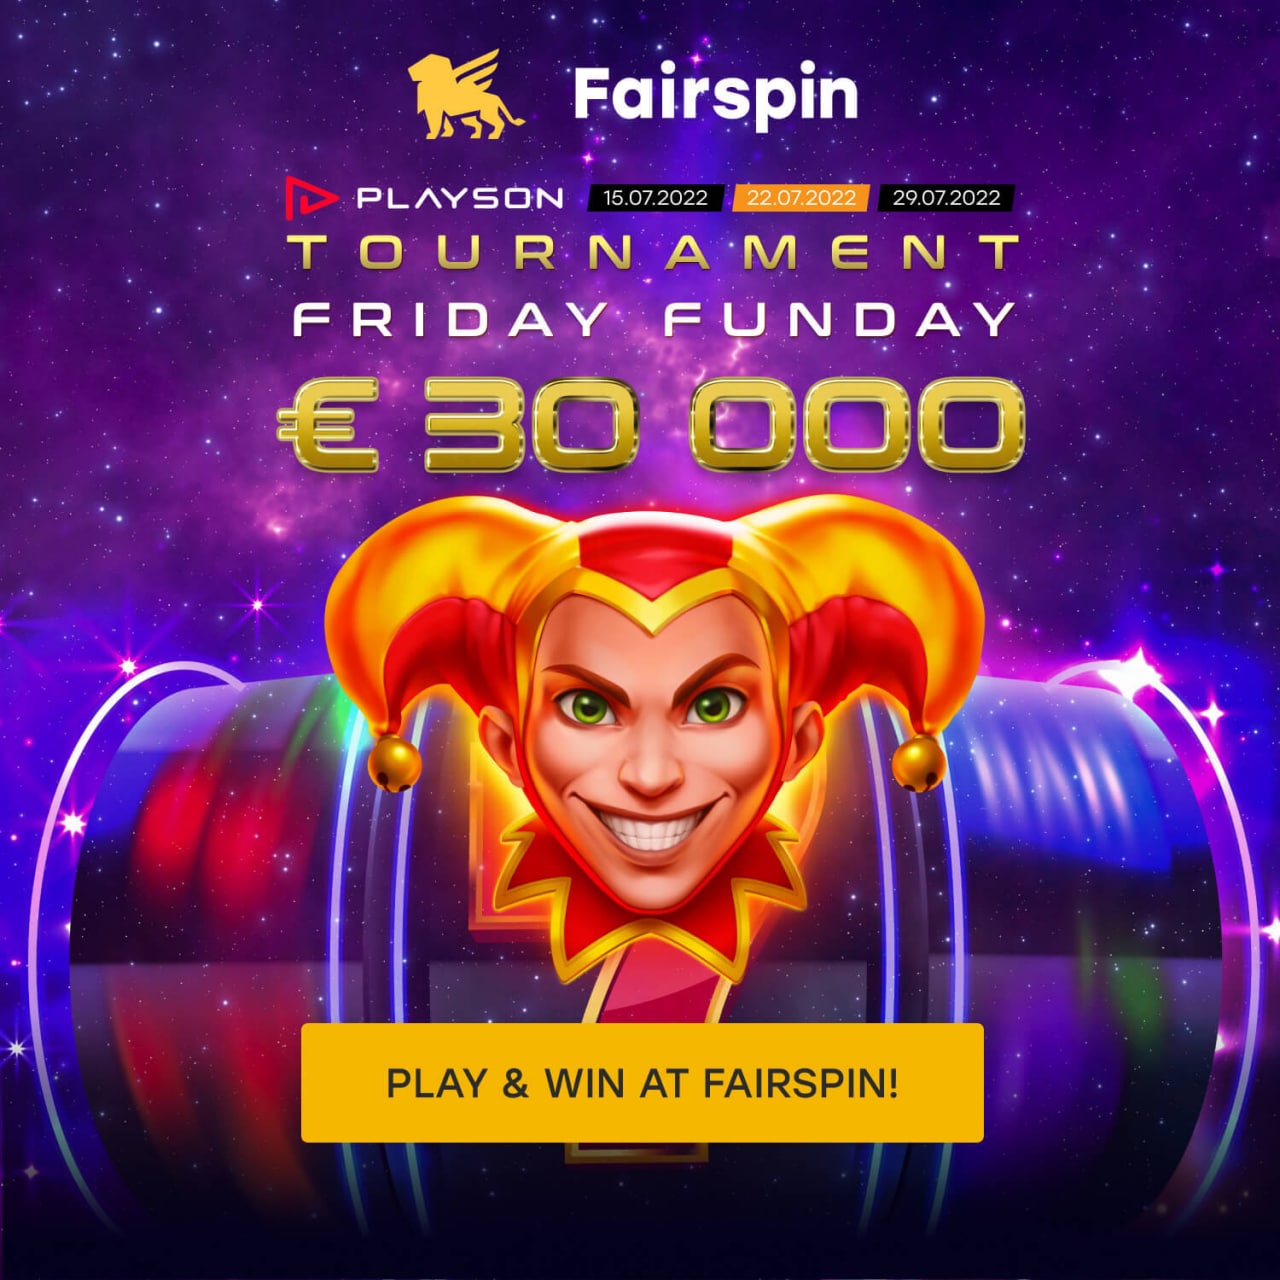 Fair spin фриспины fairspin plp fun. Playson Tournament.